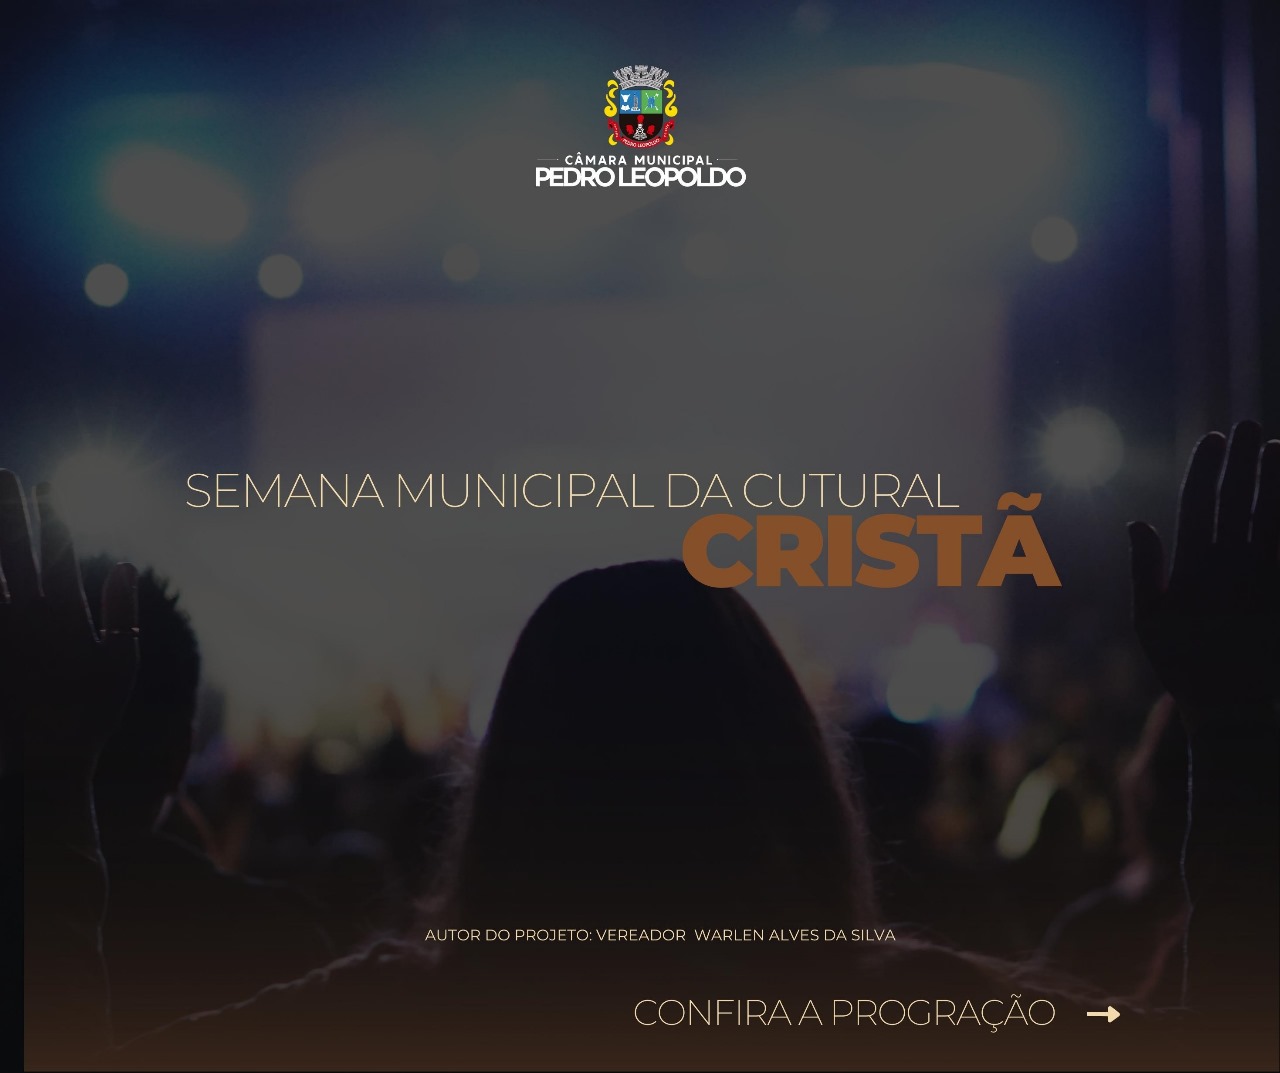 Semana Municipal da Cultura Cristã em Pedro Leopoldo: Uma Jornada de Fé e Cultura para Todos